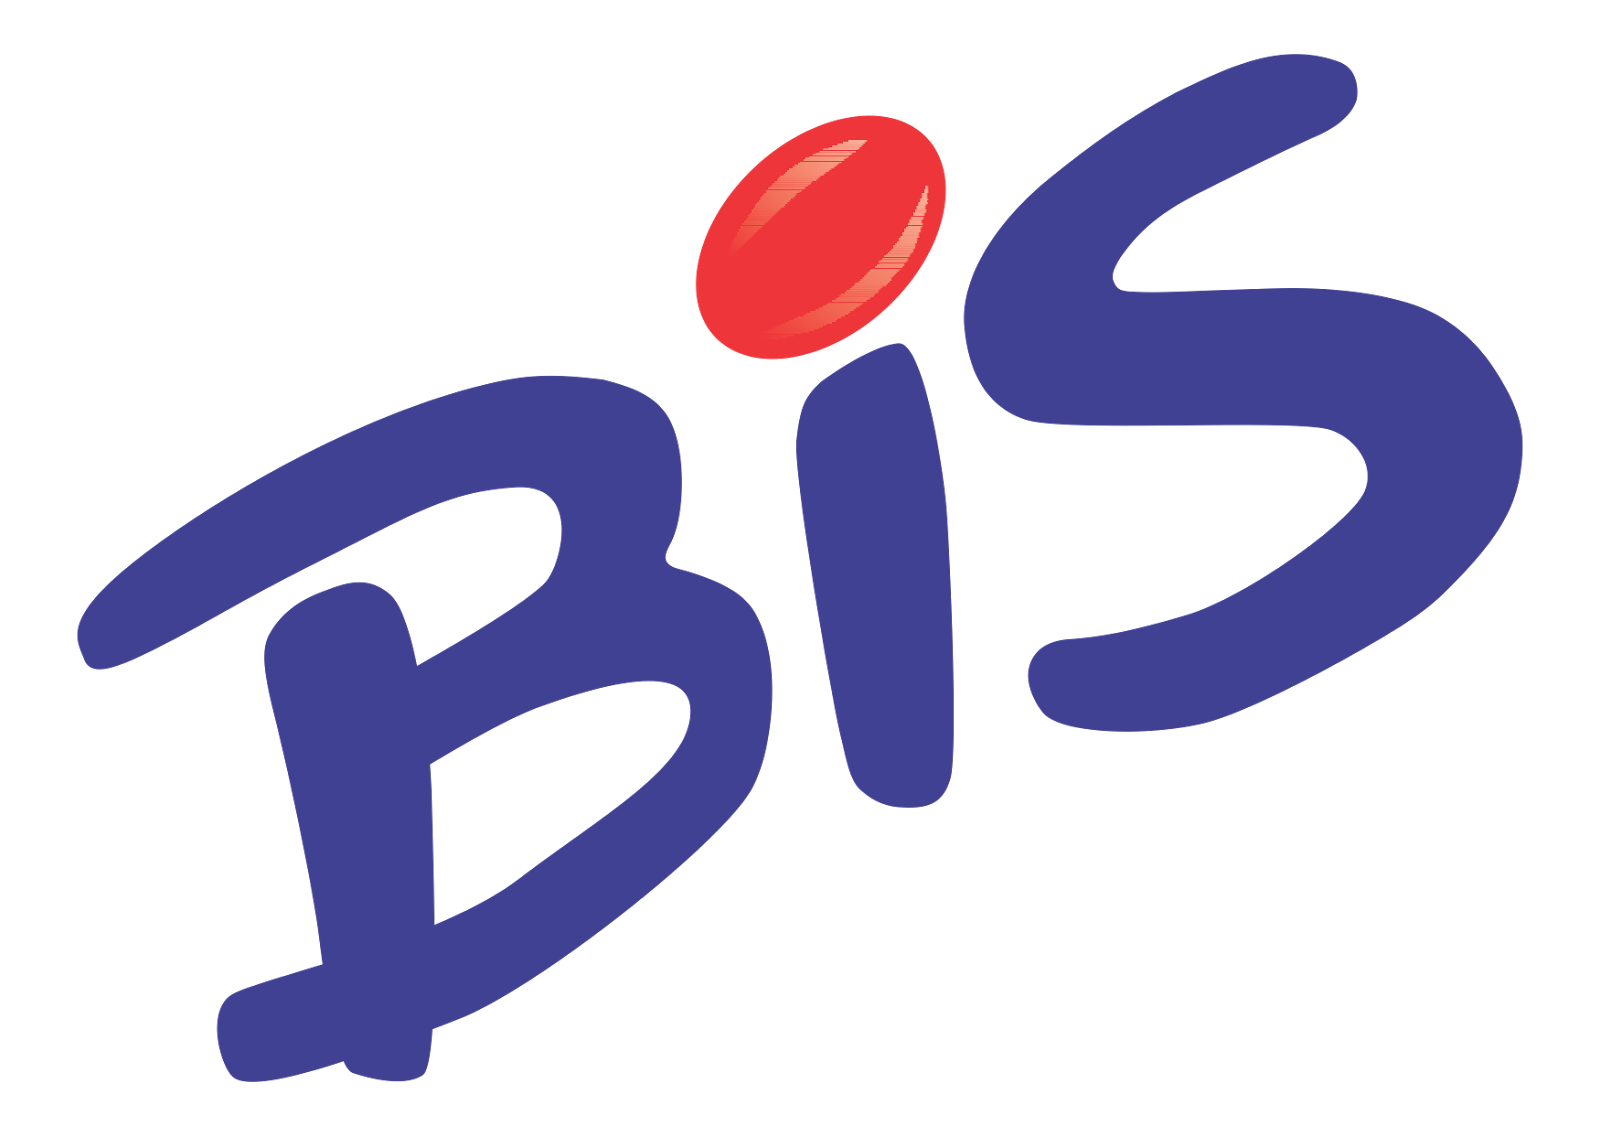 Bis Logo Wallpaper